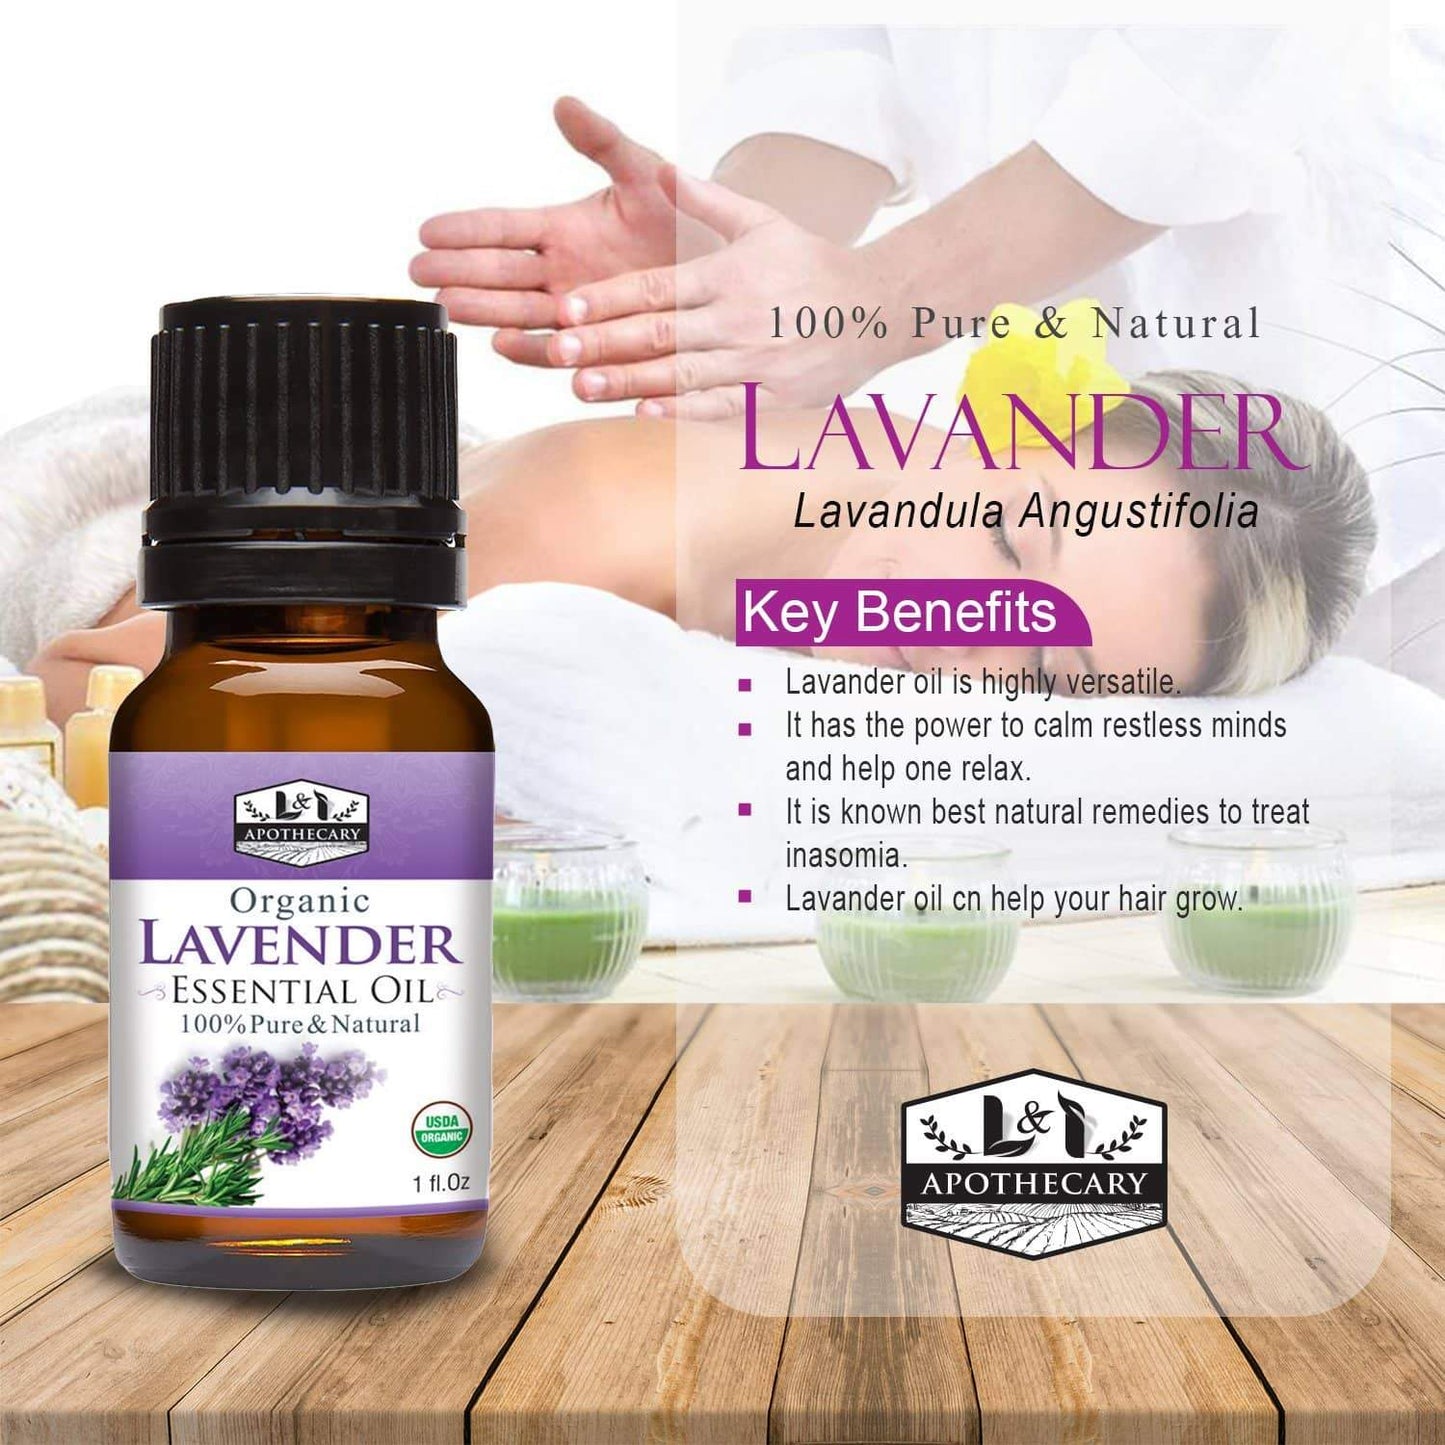 Organic Lavender Essential Oil for Diffuser (1 oz) - 100% Pure